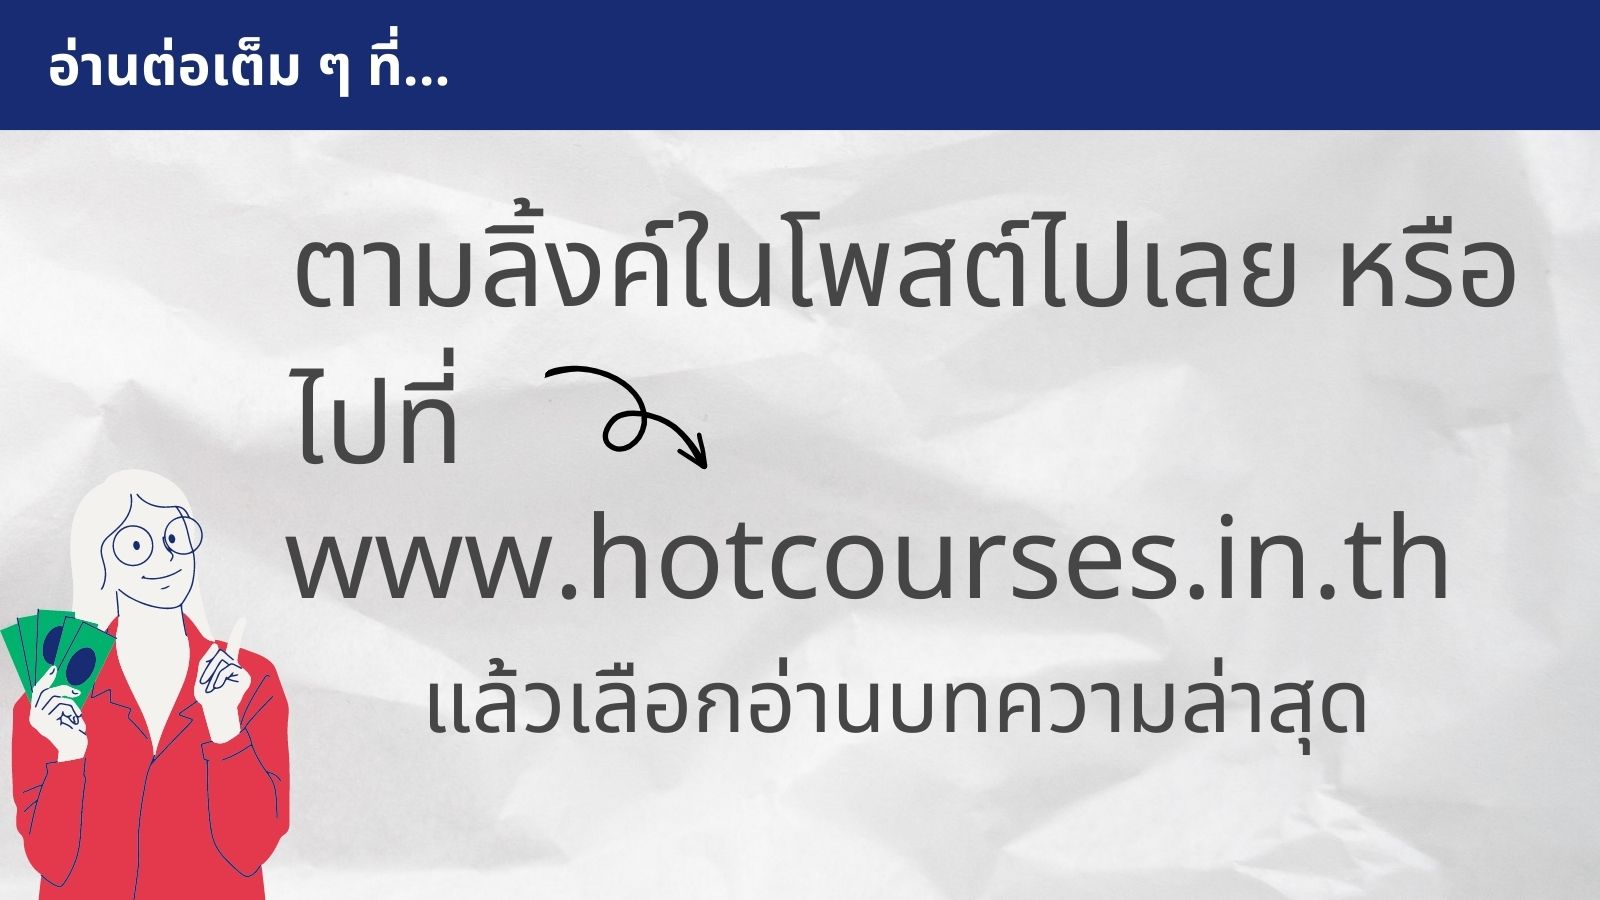 Hotcourses Thailand On Twitter: 